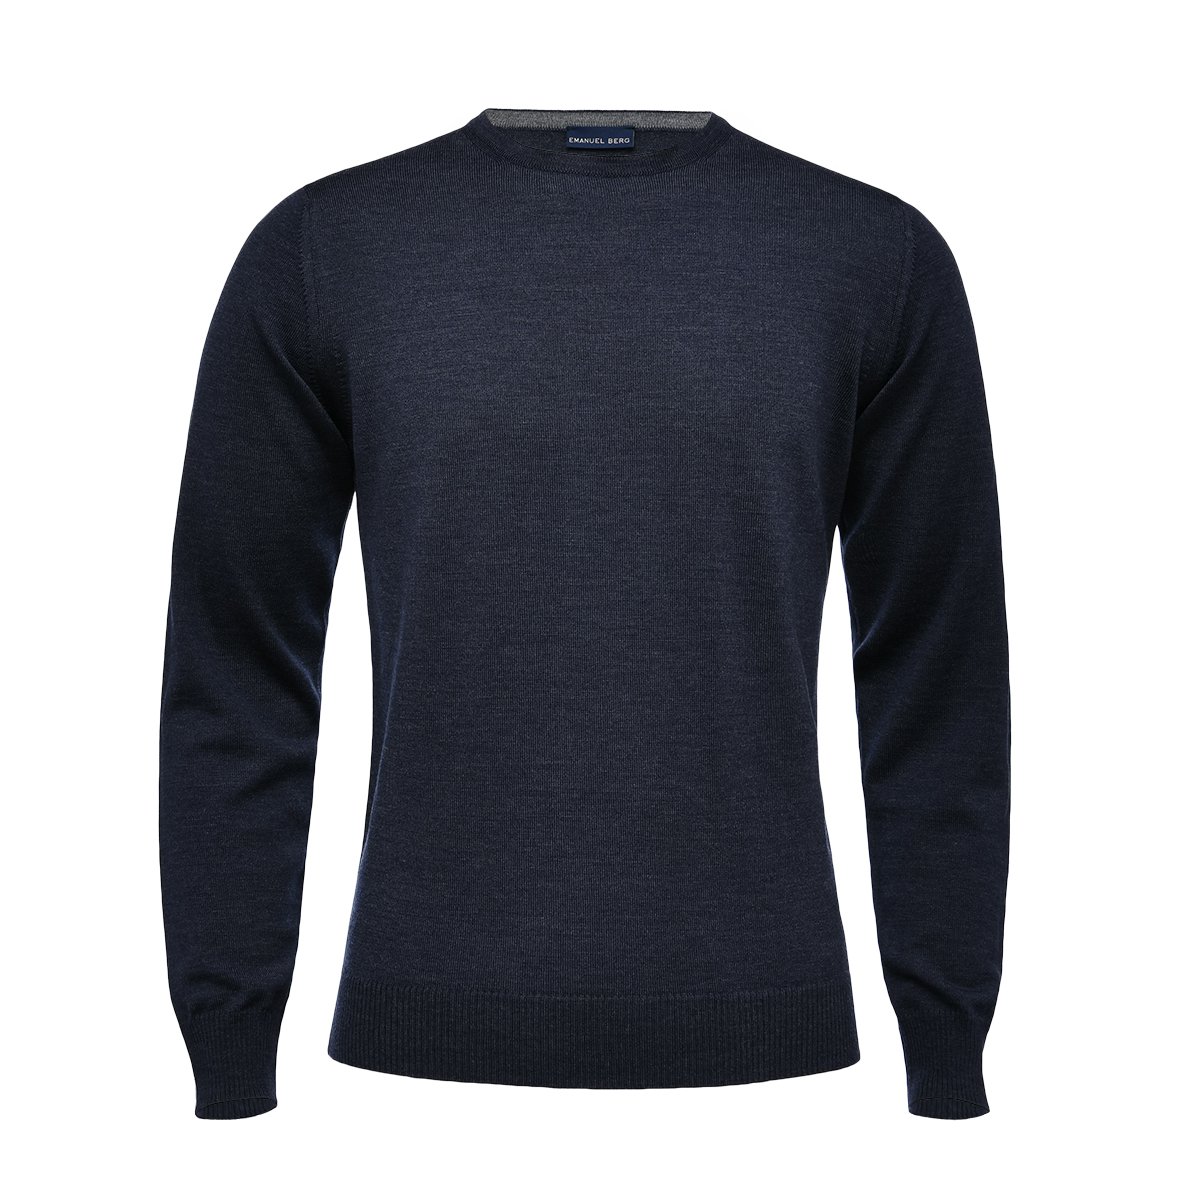 Superfine Blue | Sweater Navy Wool Merino Shirting